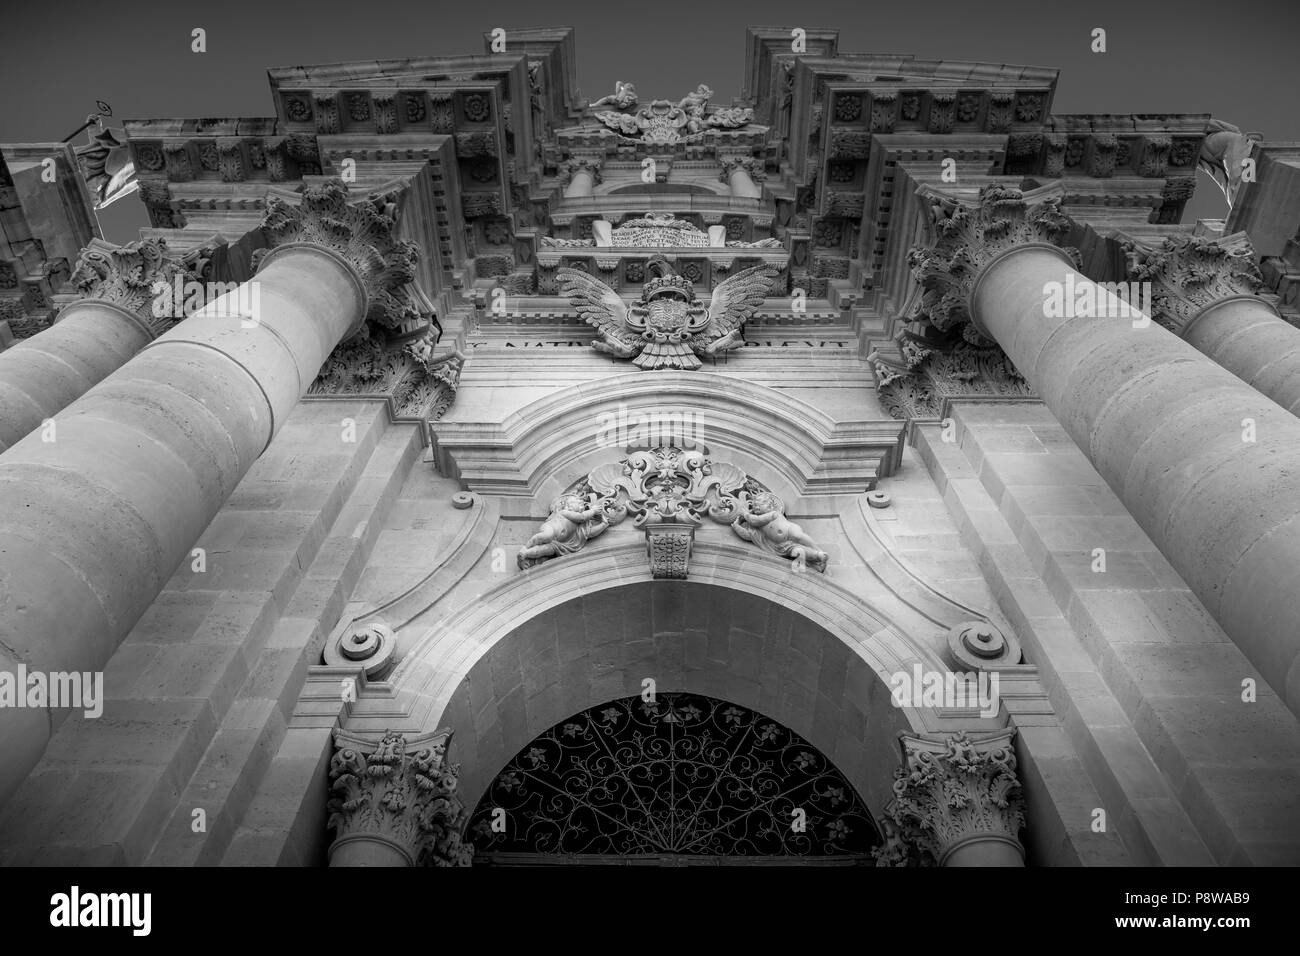 Dettaglio barocco del Duomo di Siracusa, Italia, situato nella zona di Ortigia. Foto Stock